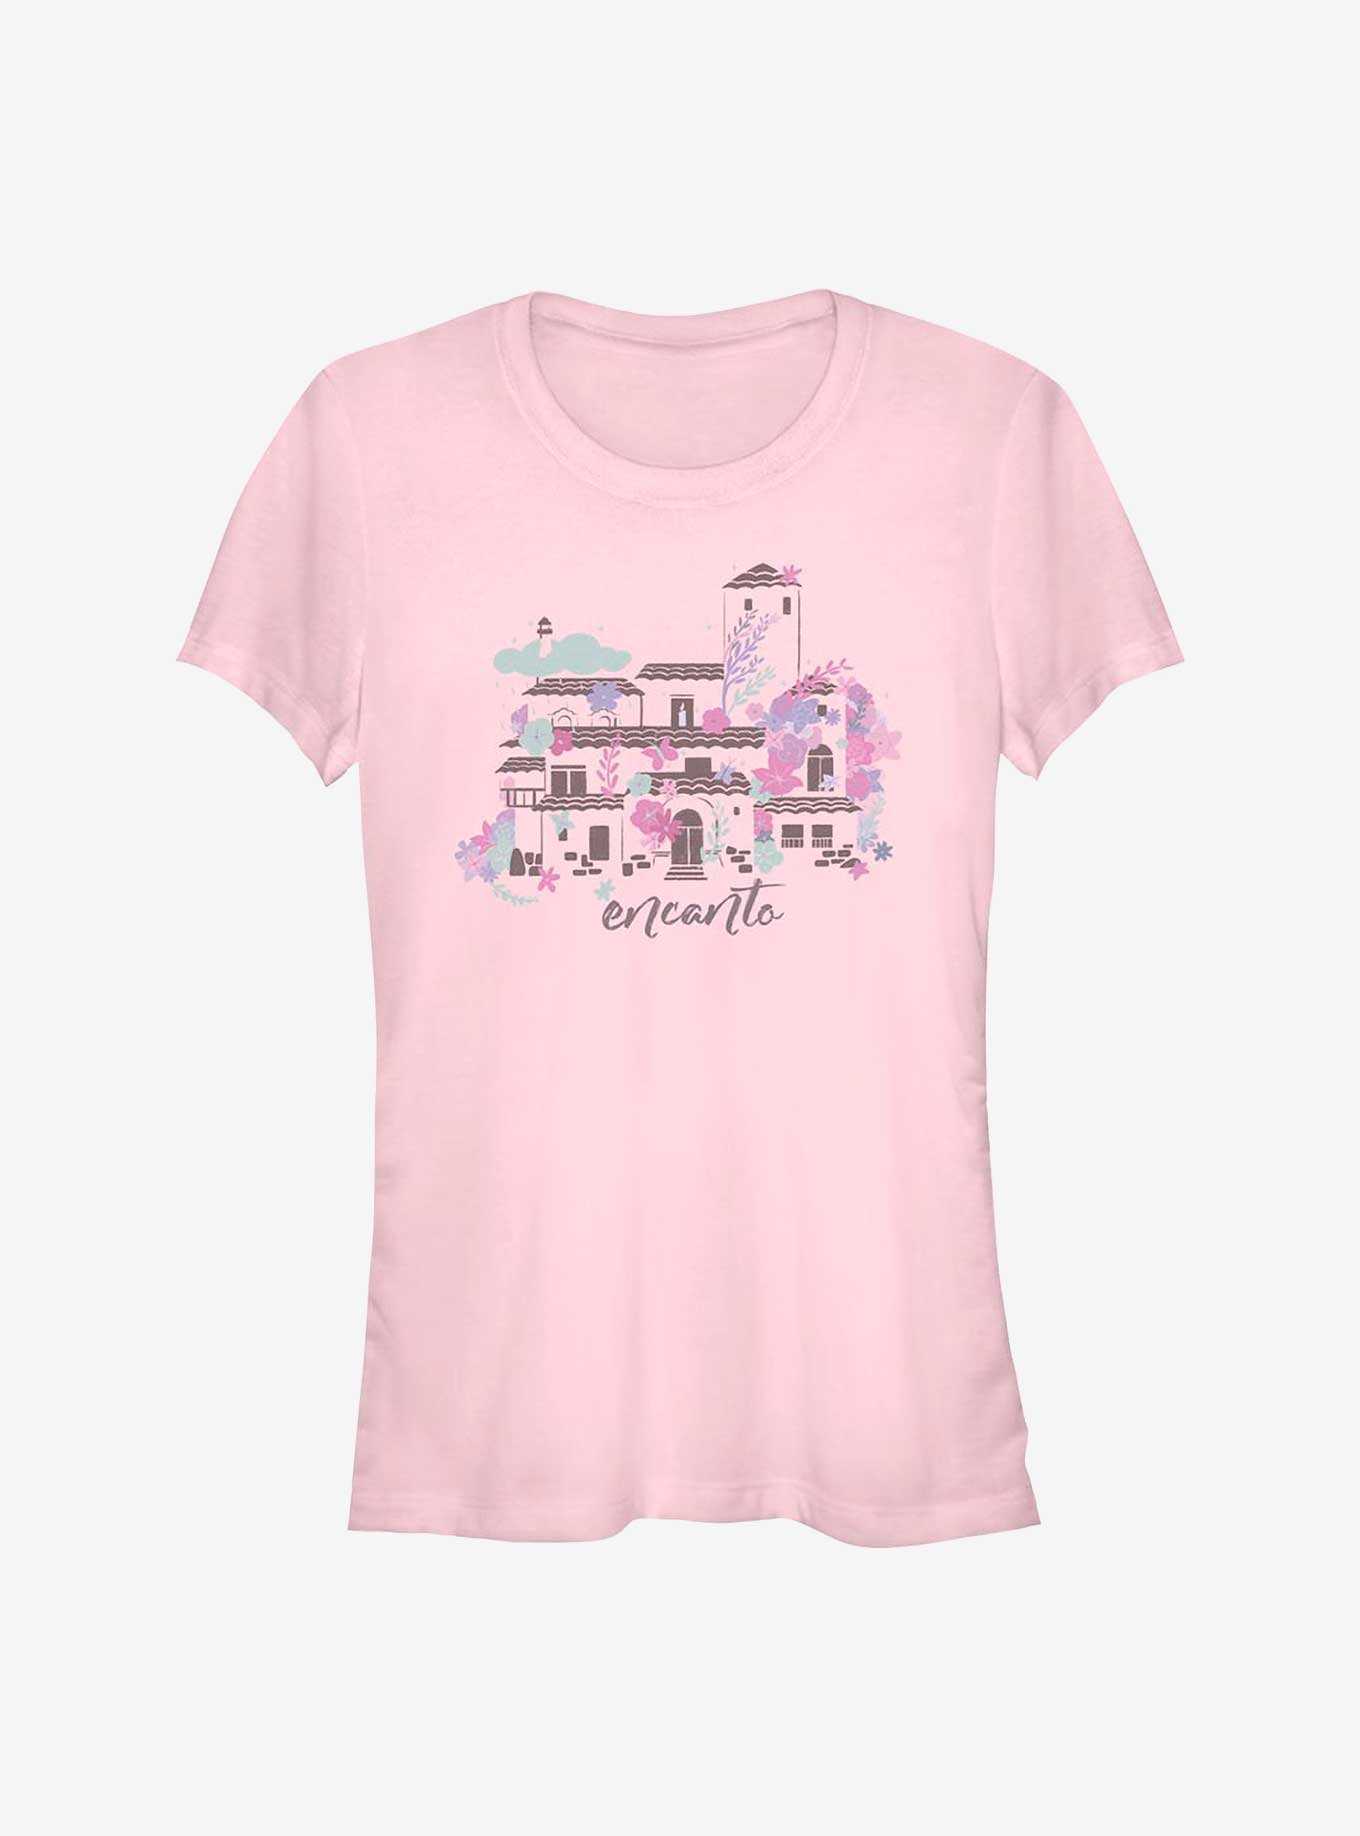 Disney Encanto Home Girl's T-Shirt, LIGHT PINK, hi-res